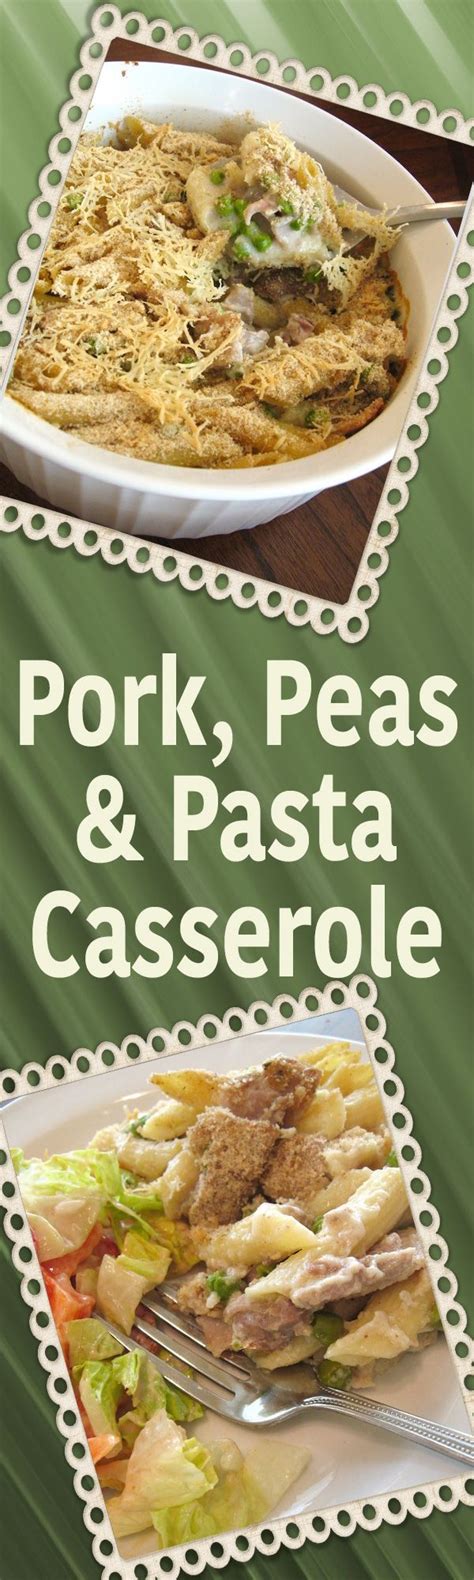 Add diced carrots or peas for extra nutrition and a pop of color. Pork Peas & Pasta Casserole | Leftover pork recipes, Pork ...